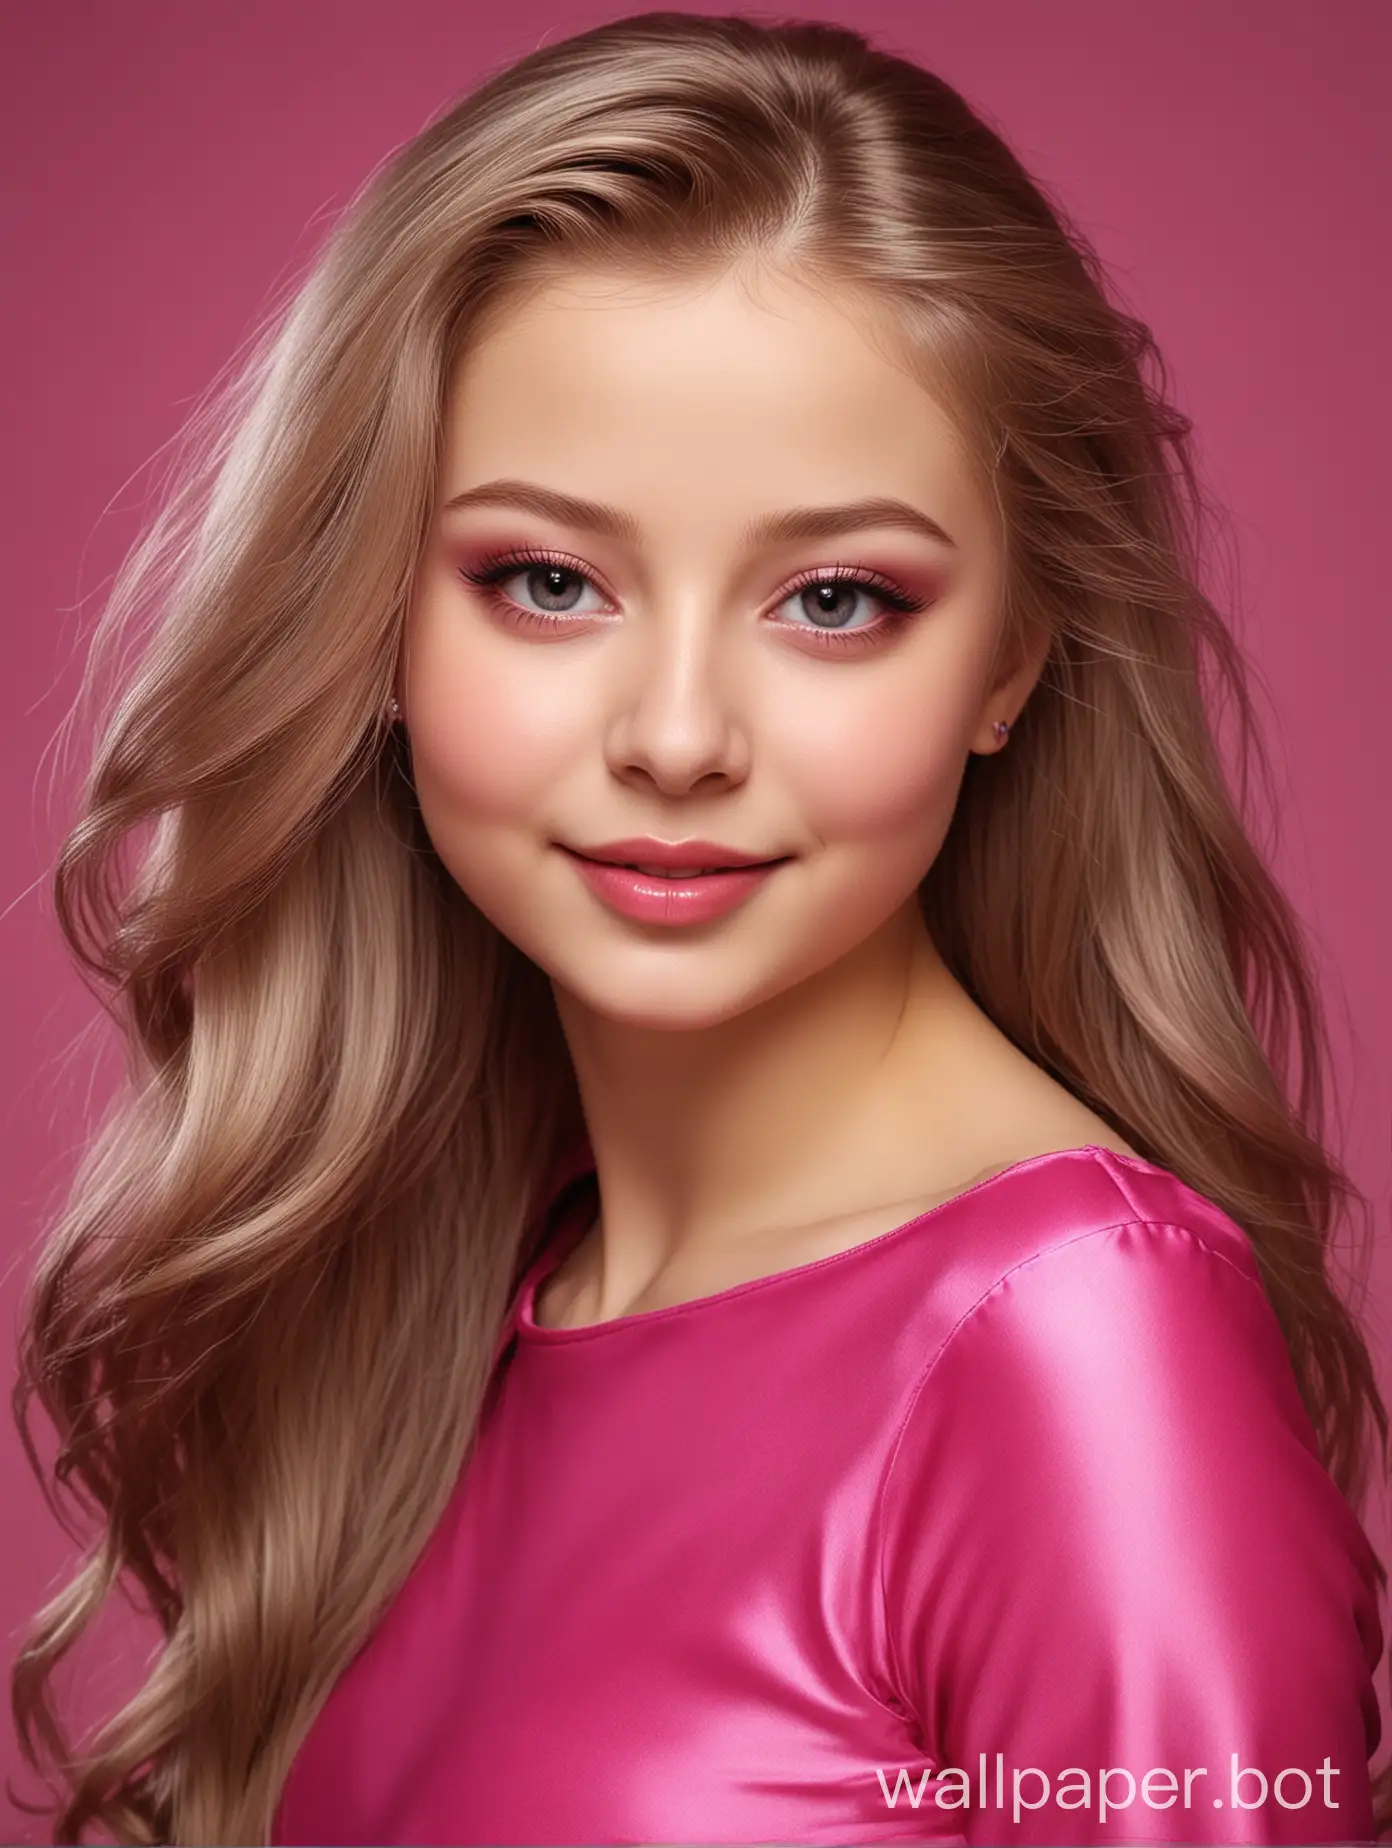 Реалистичная милашка Юлия Липницкая с длинными прямыми шелковистыми волосами в розовом фуксиевом шелке улыбается